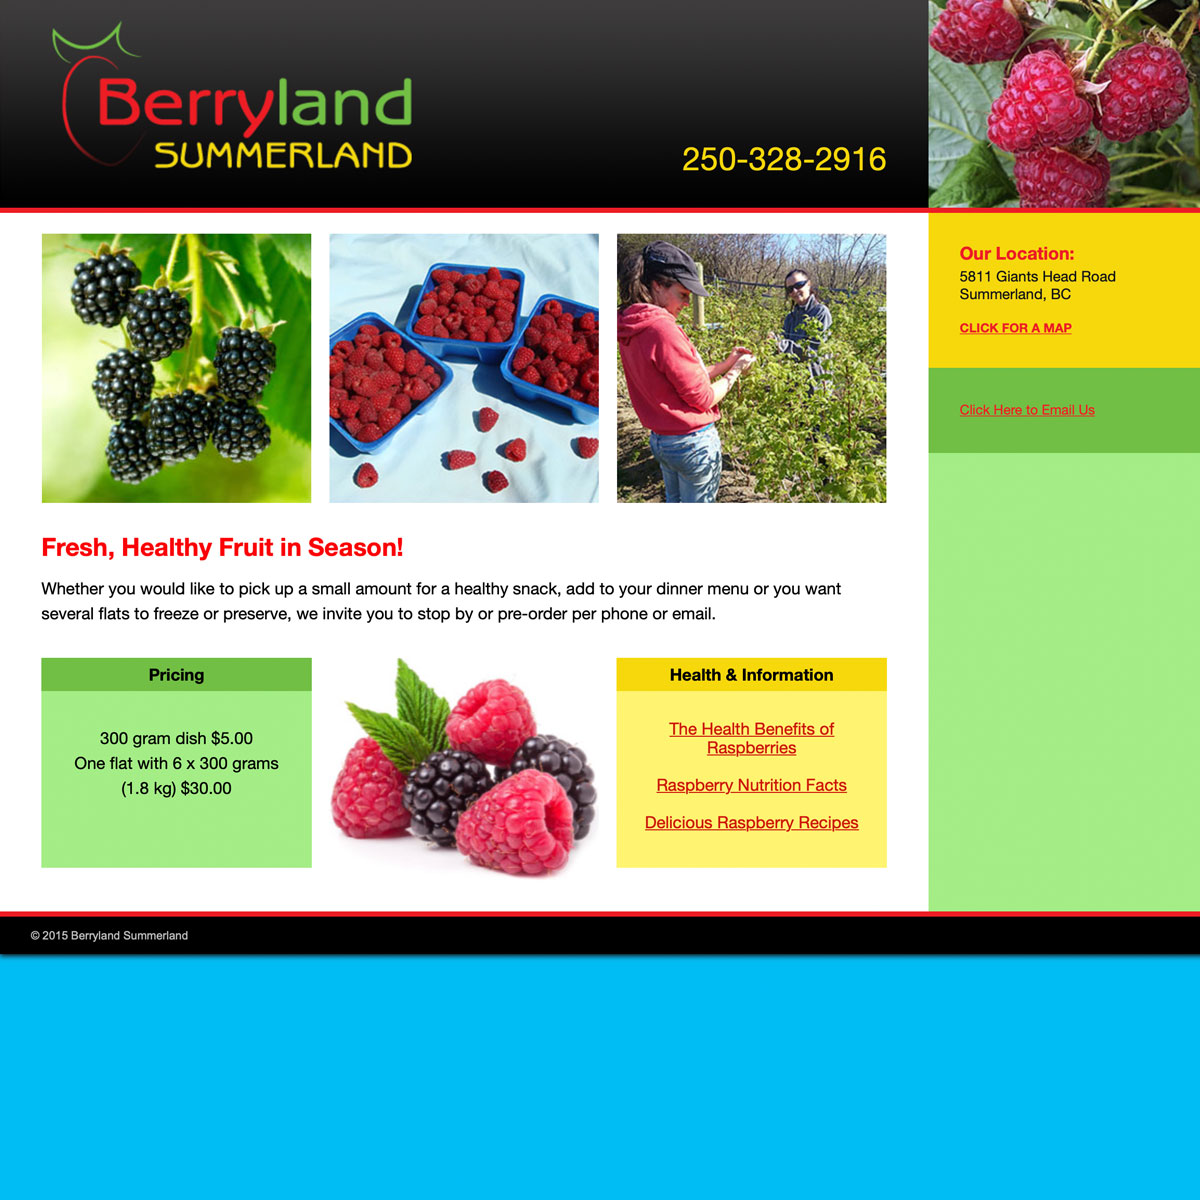 Berryland Summerland website